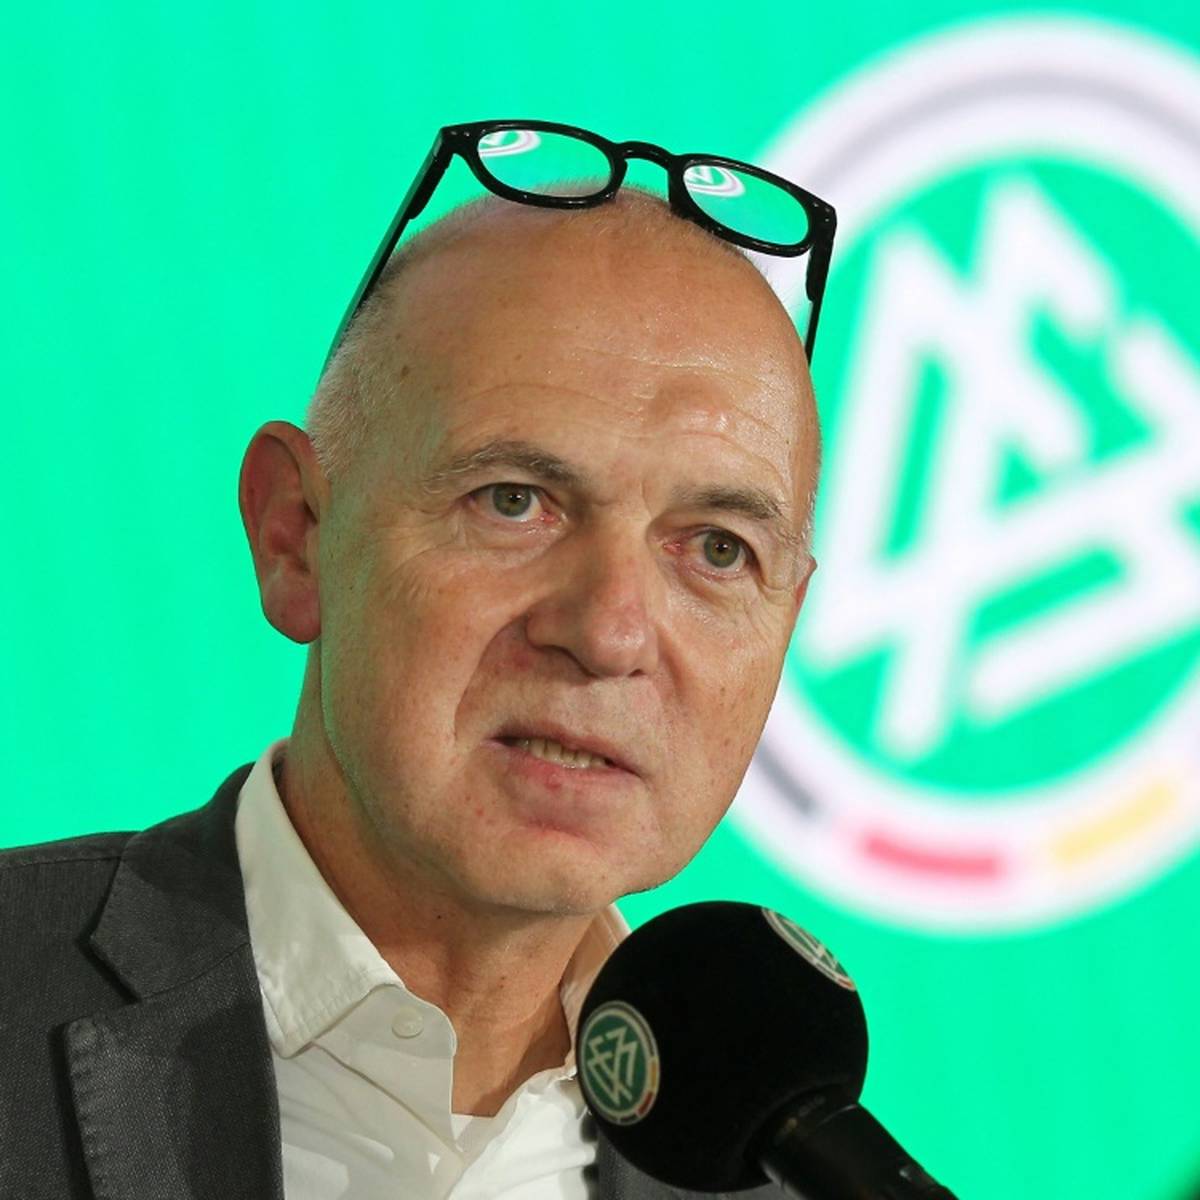 DFB-Präsident Bernd Neuendorf hat die neue „One Love“-Binde der deutschen Fußball-Nationalmannschaft verteidigt.